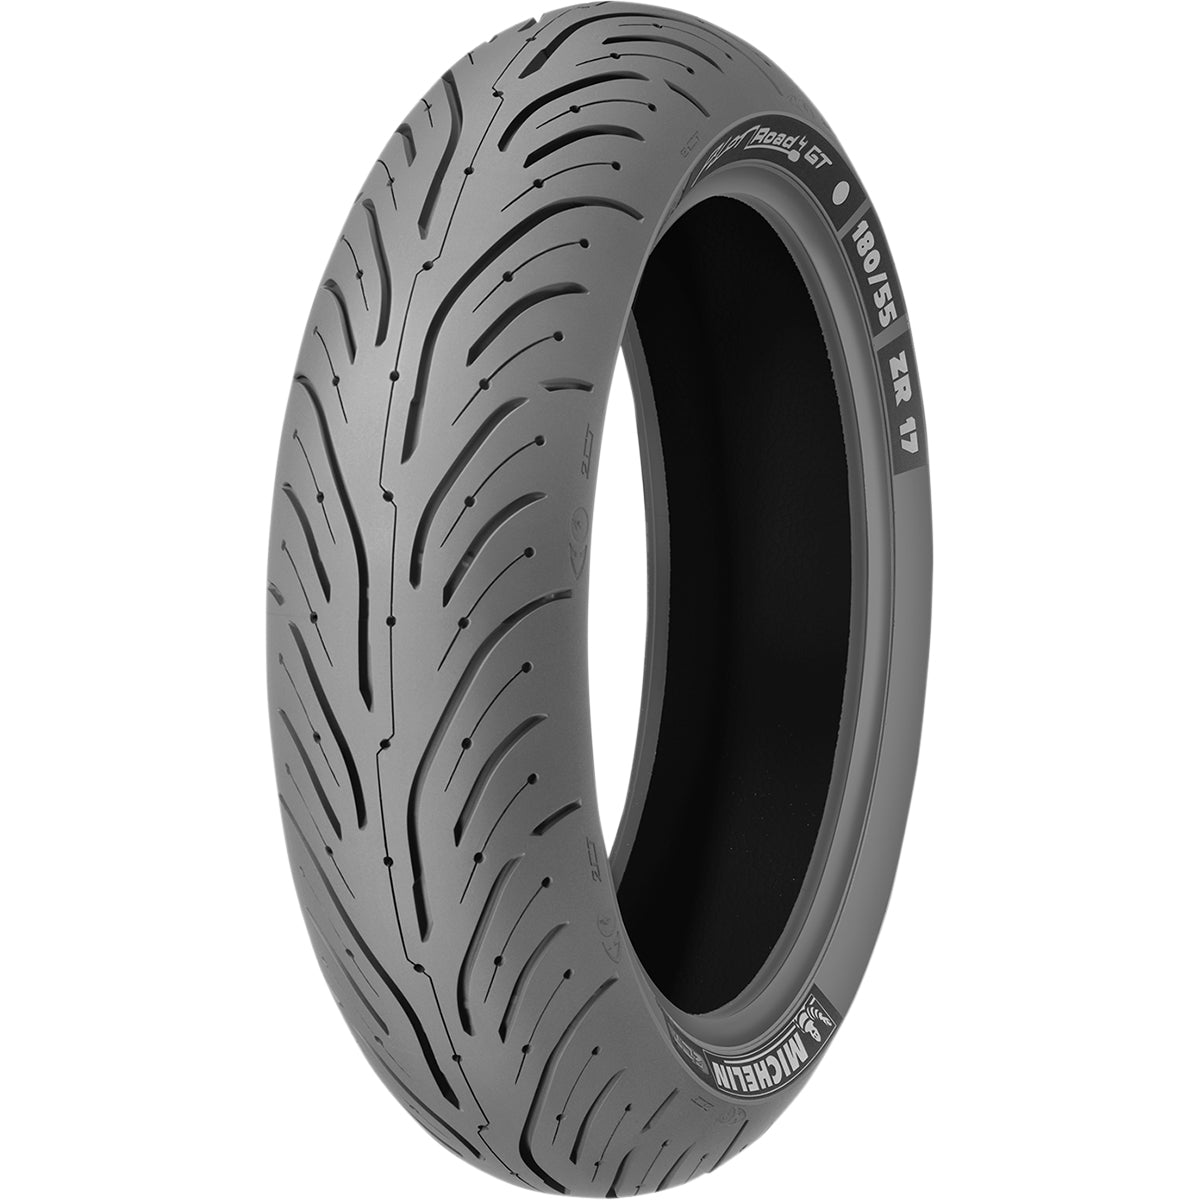 Michelin Pilot Road 4 GT 17" Rear Street Tires-0302